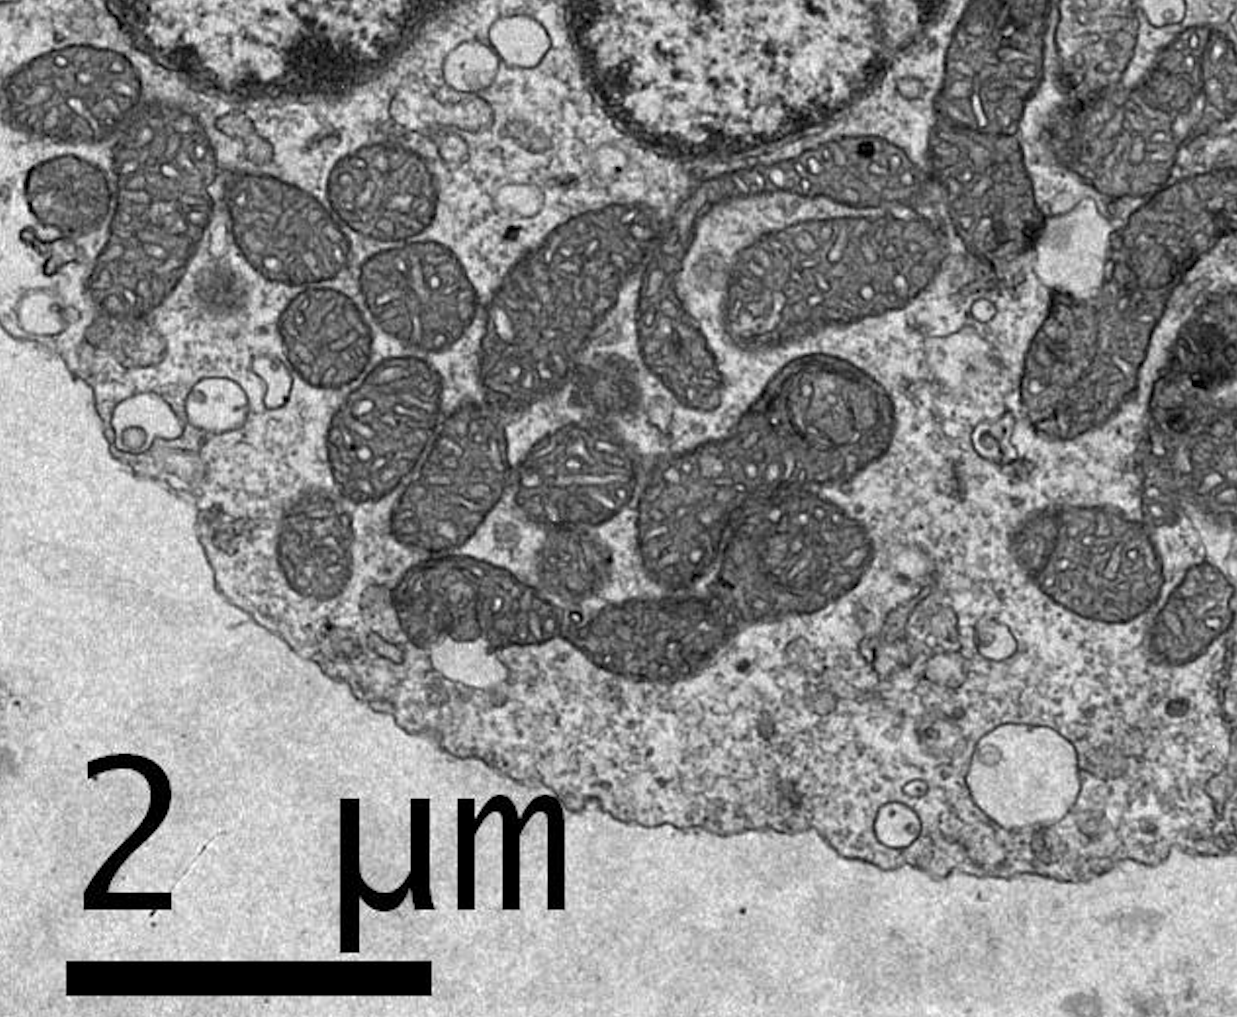 Imagen de mitocondrias realizada con microscopio electrónico de transmisión